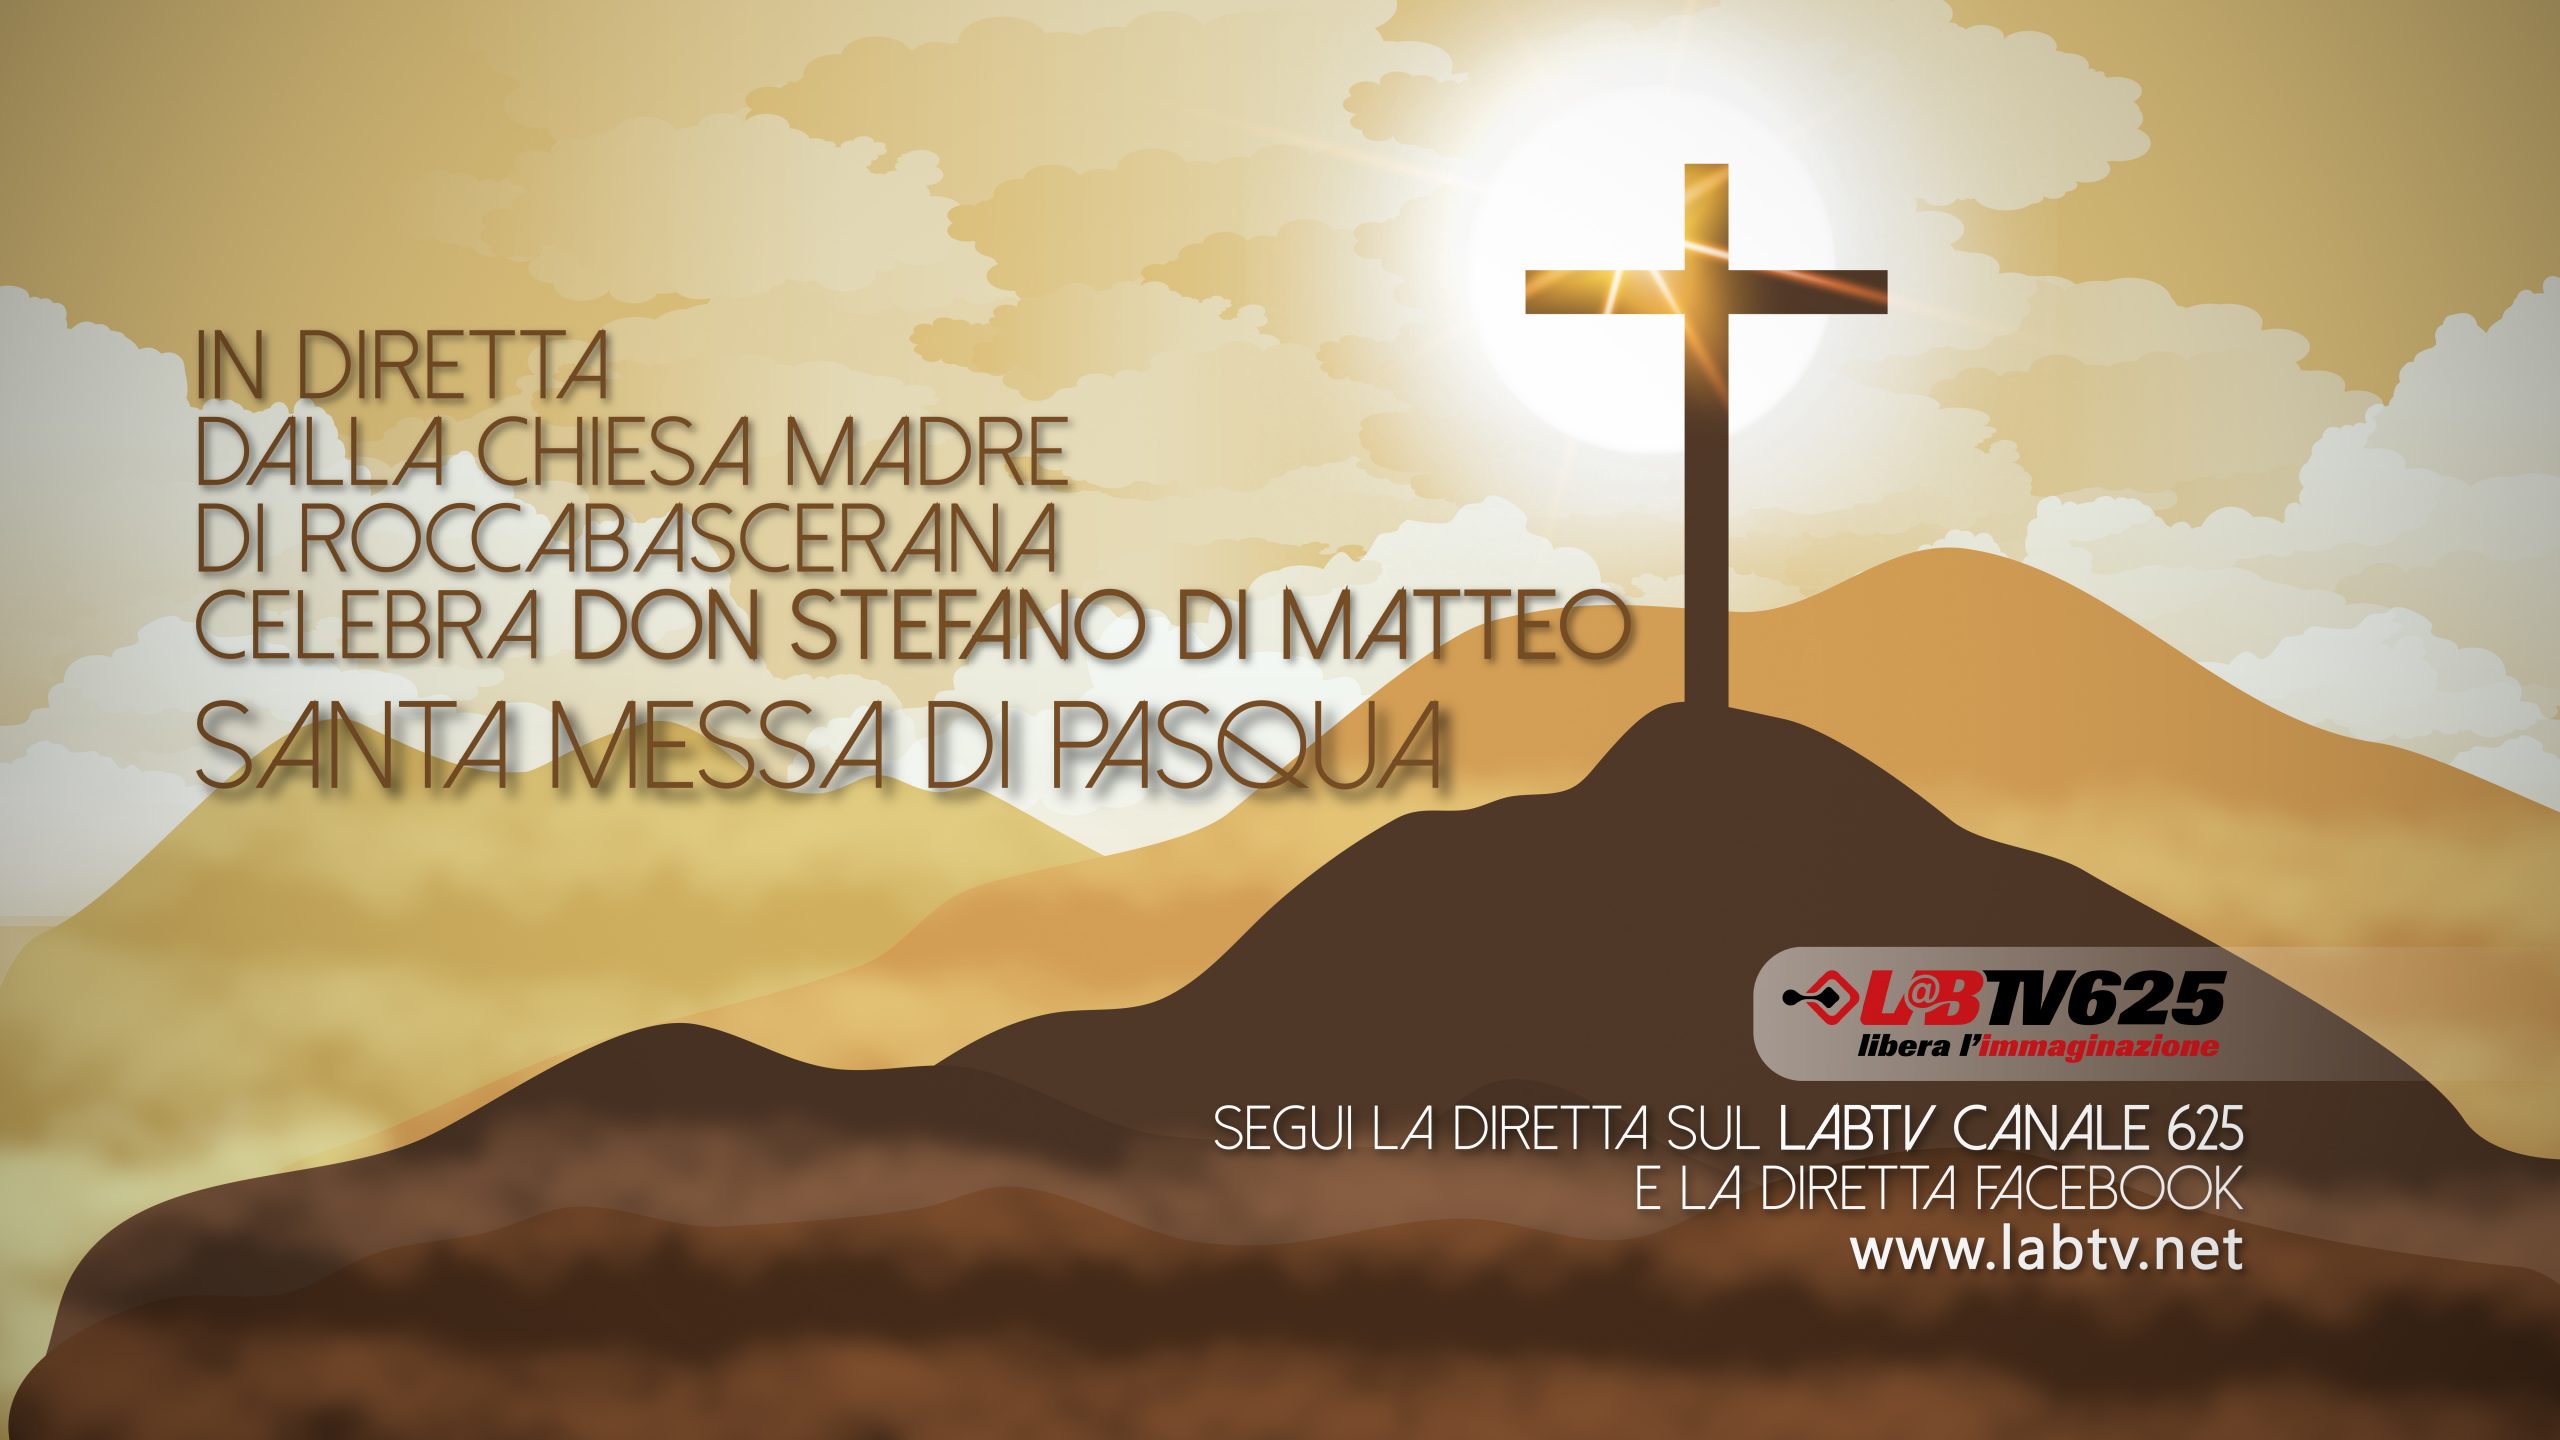 Domenica di Pasqua: domani in diretta dalla Chiesa Madre di  Roccabascerana la Santa Messa